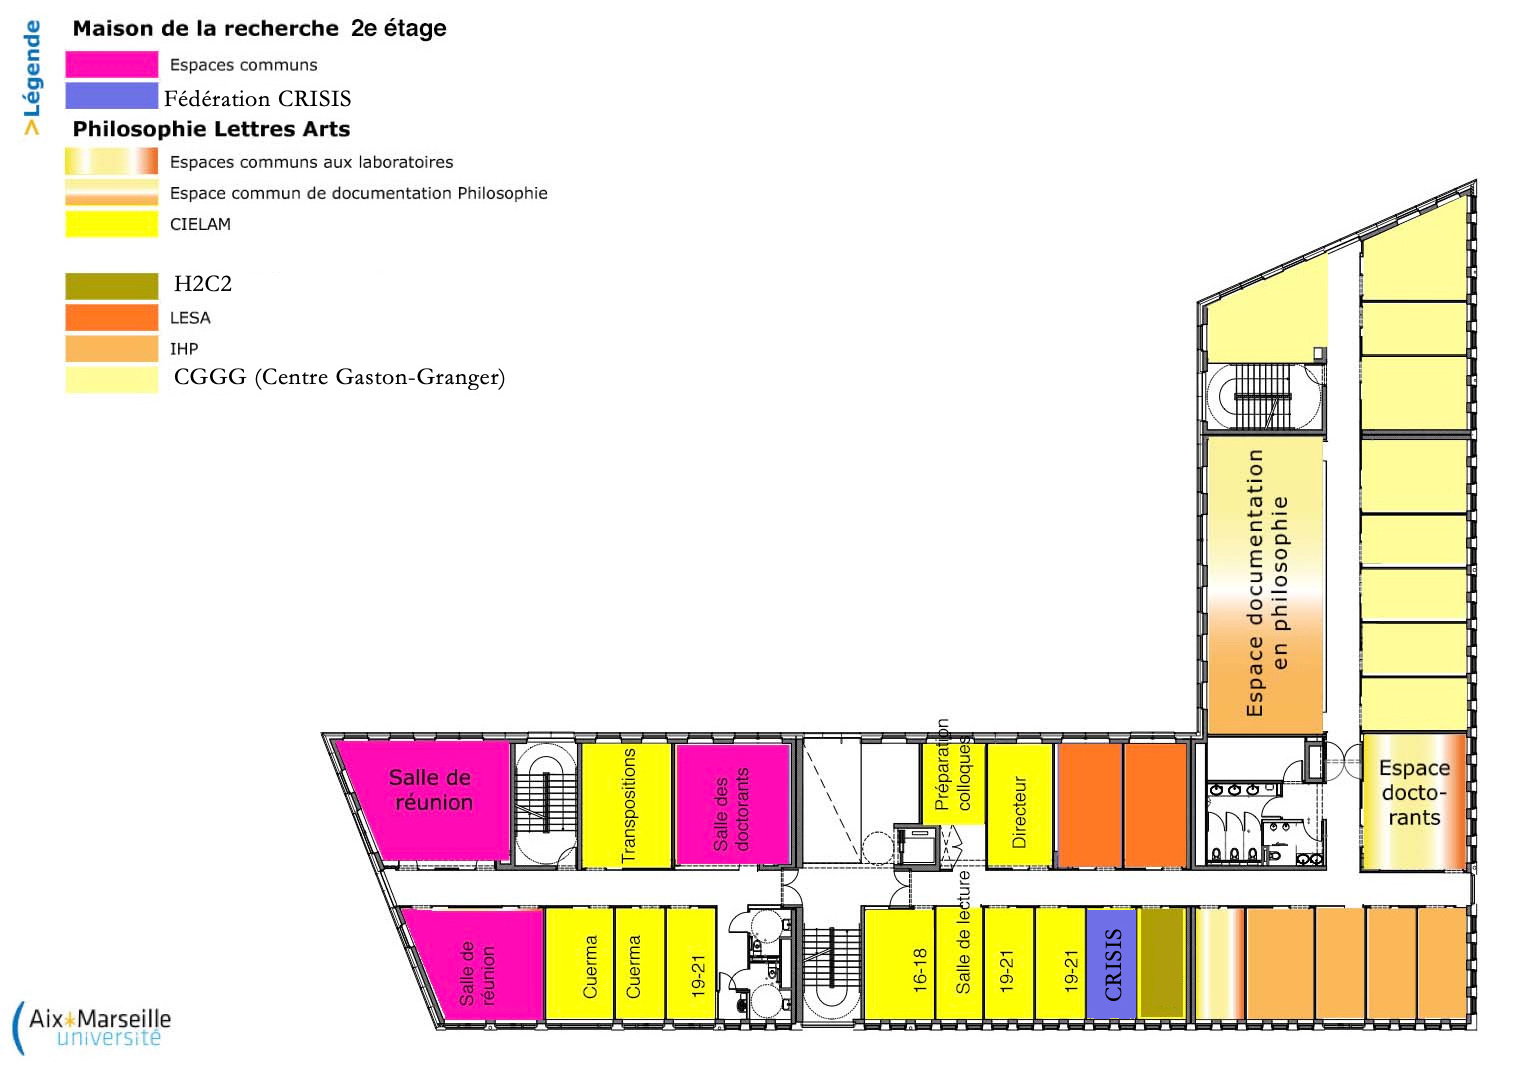 Plan 2e étage Maison de la recherche